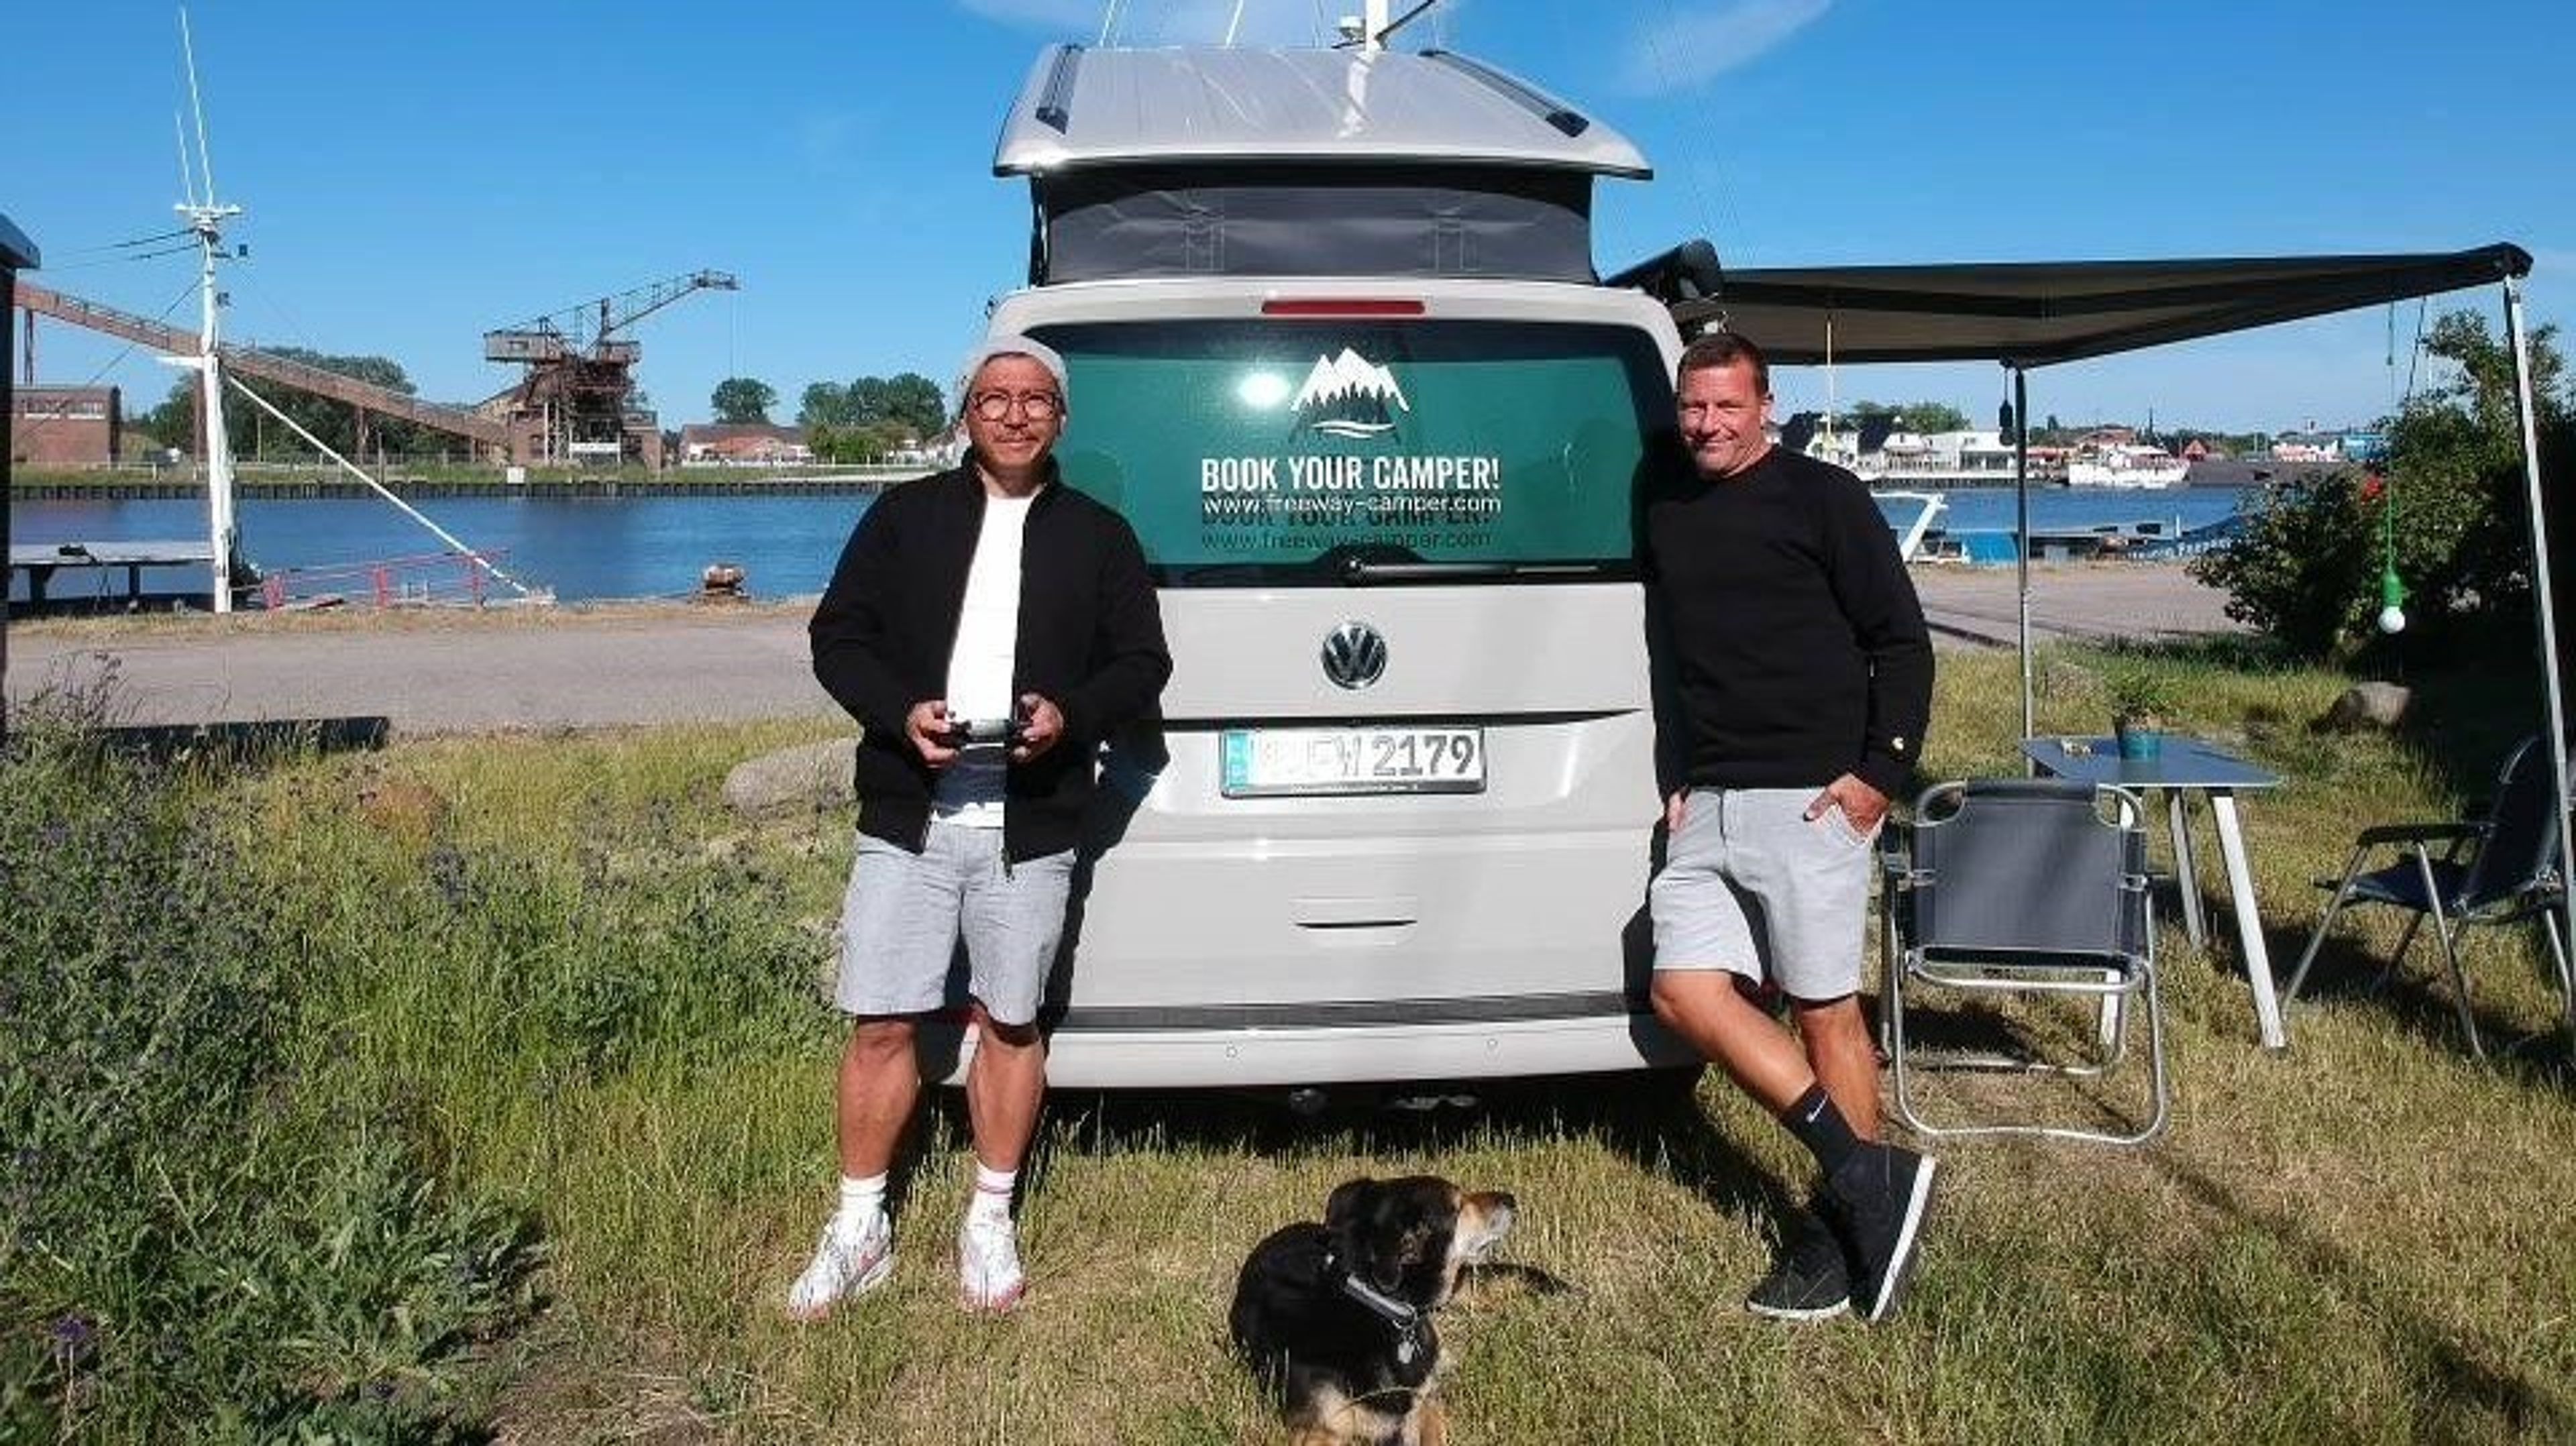 Mike e Marcus con il loro cane posano per la foto davanti al VW Bulli fronte lago